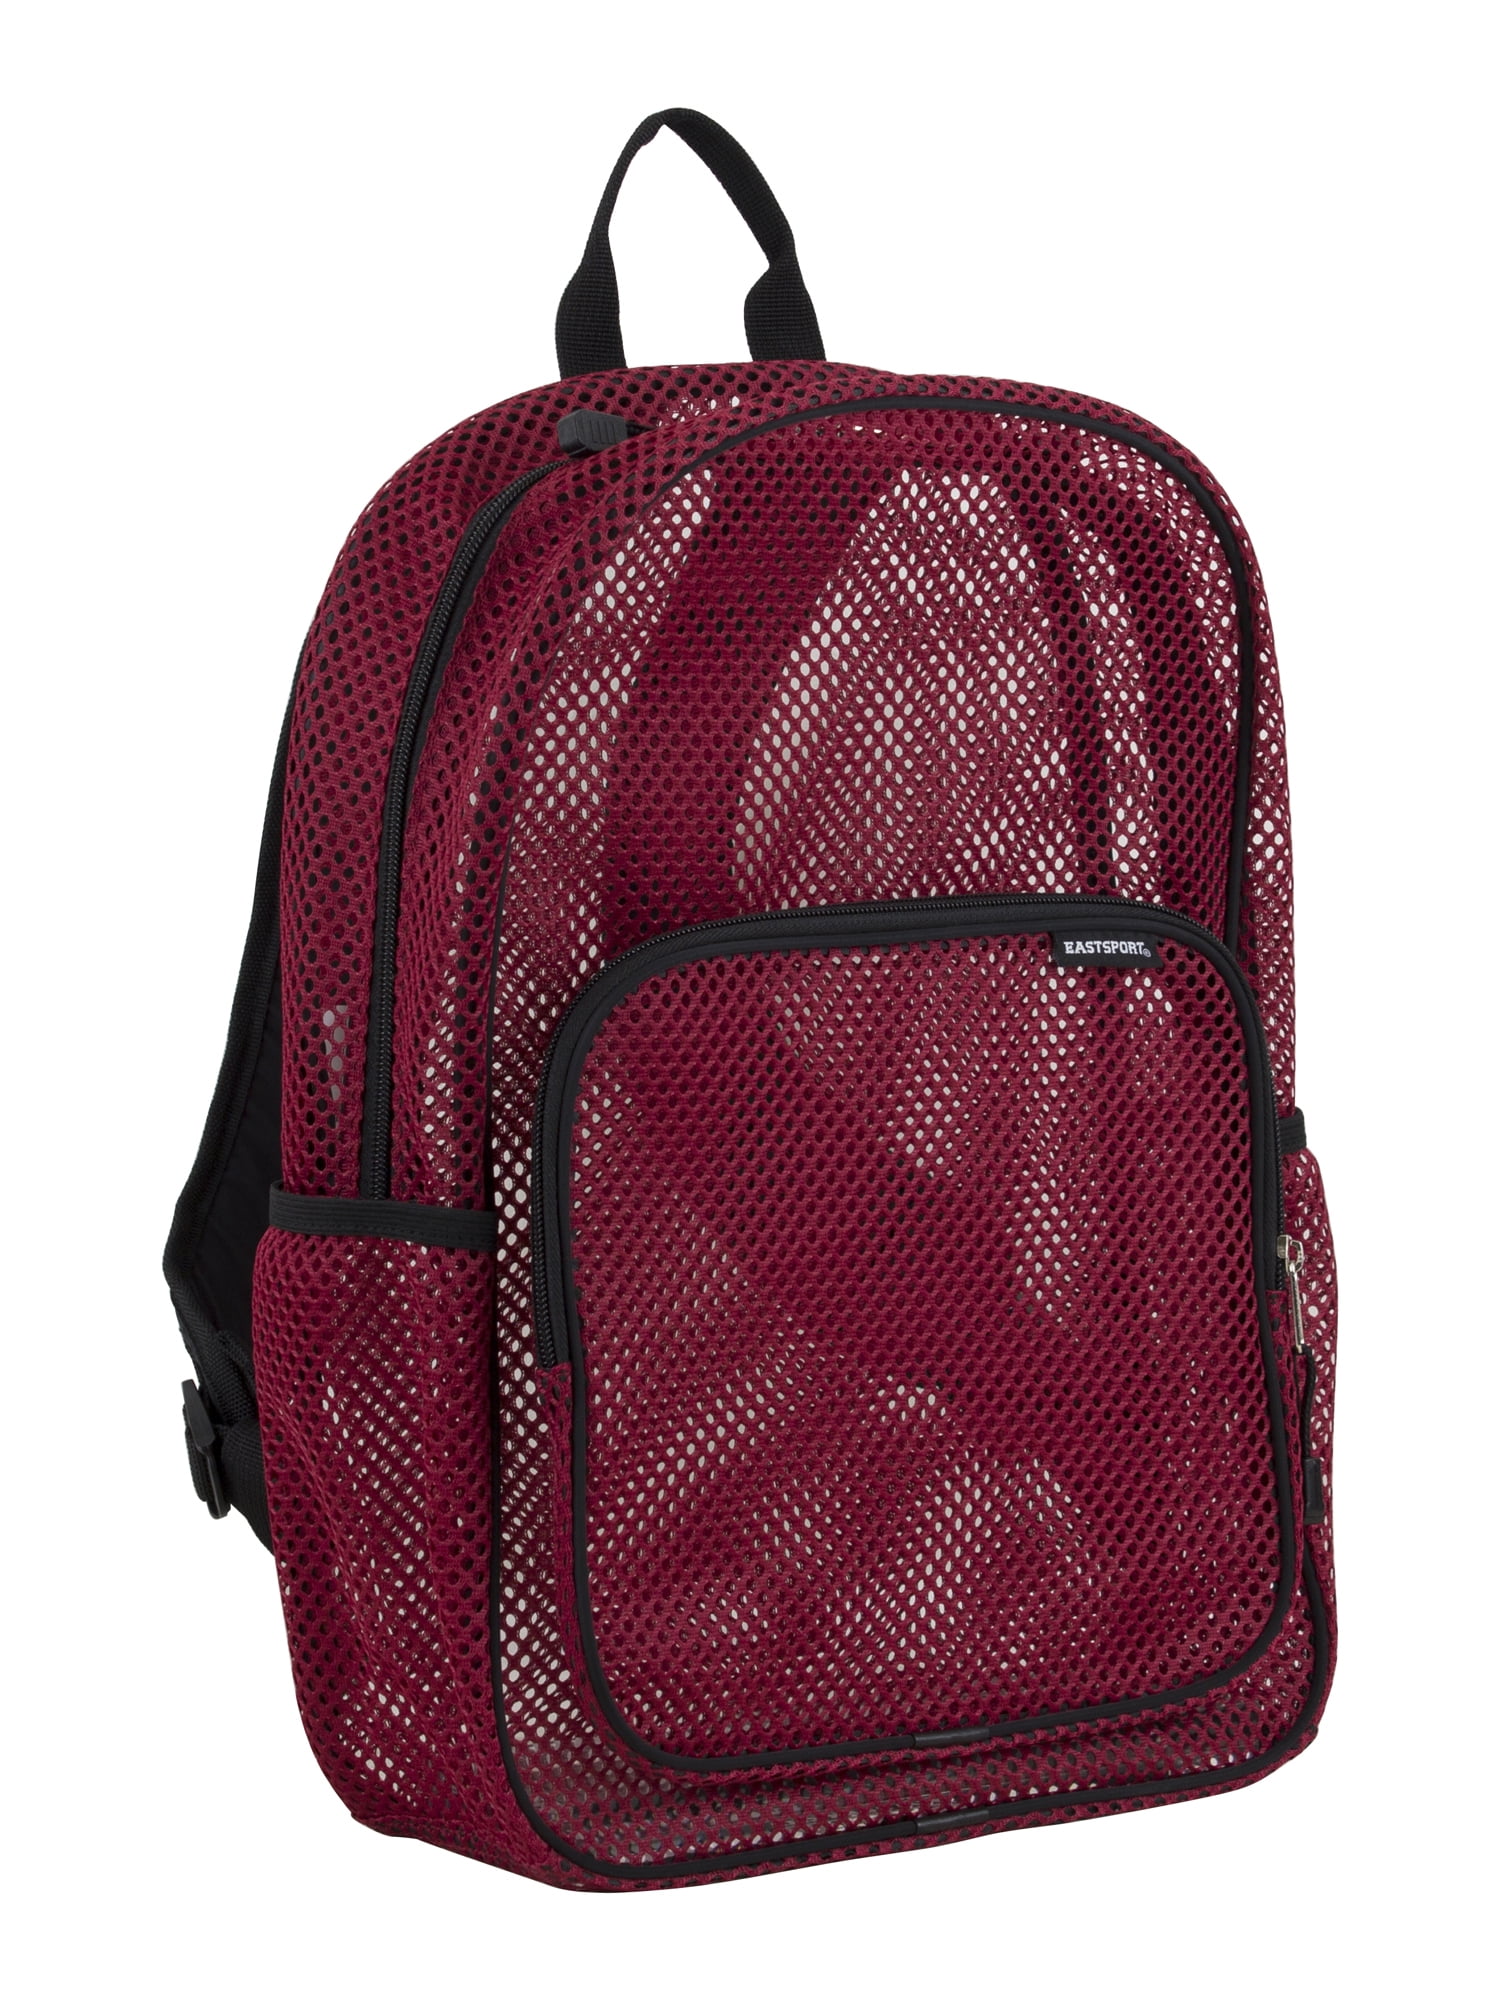 Eastsport Unisex Spirit Mesh Backpack Red - Walmart.com